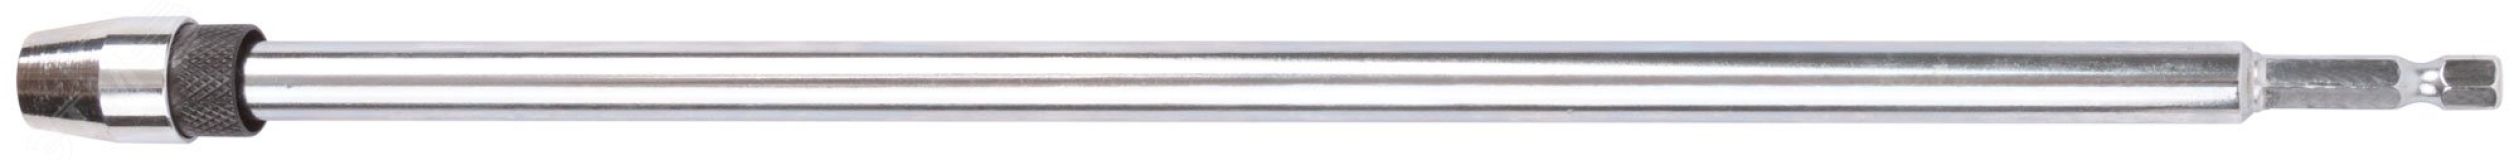 Удлинитель для перовых сверл с хвостовиком под биту (быстрая замена сверла) 300 мм 36208 FIT